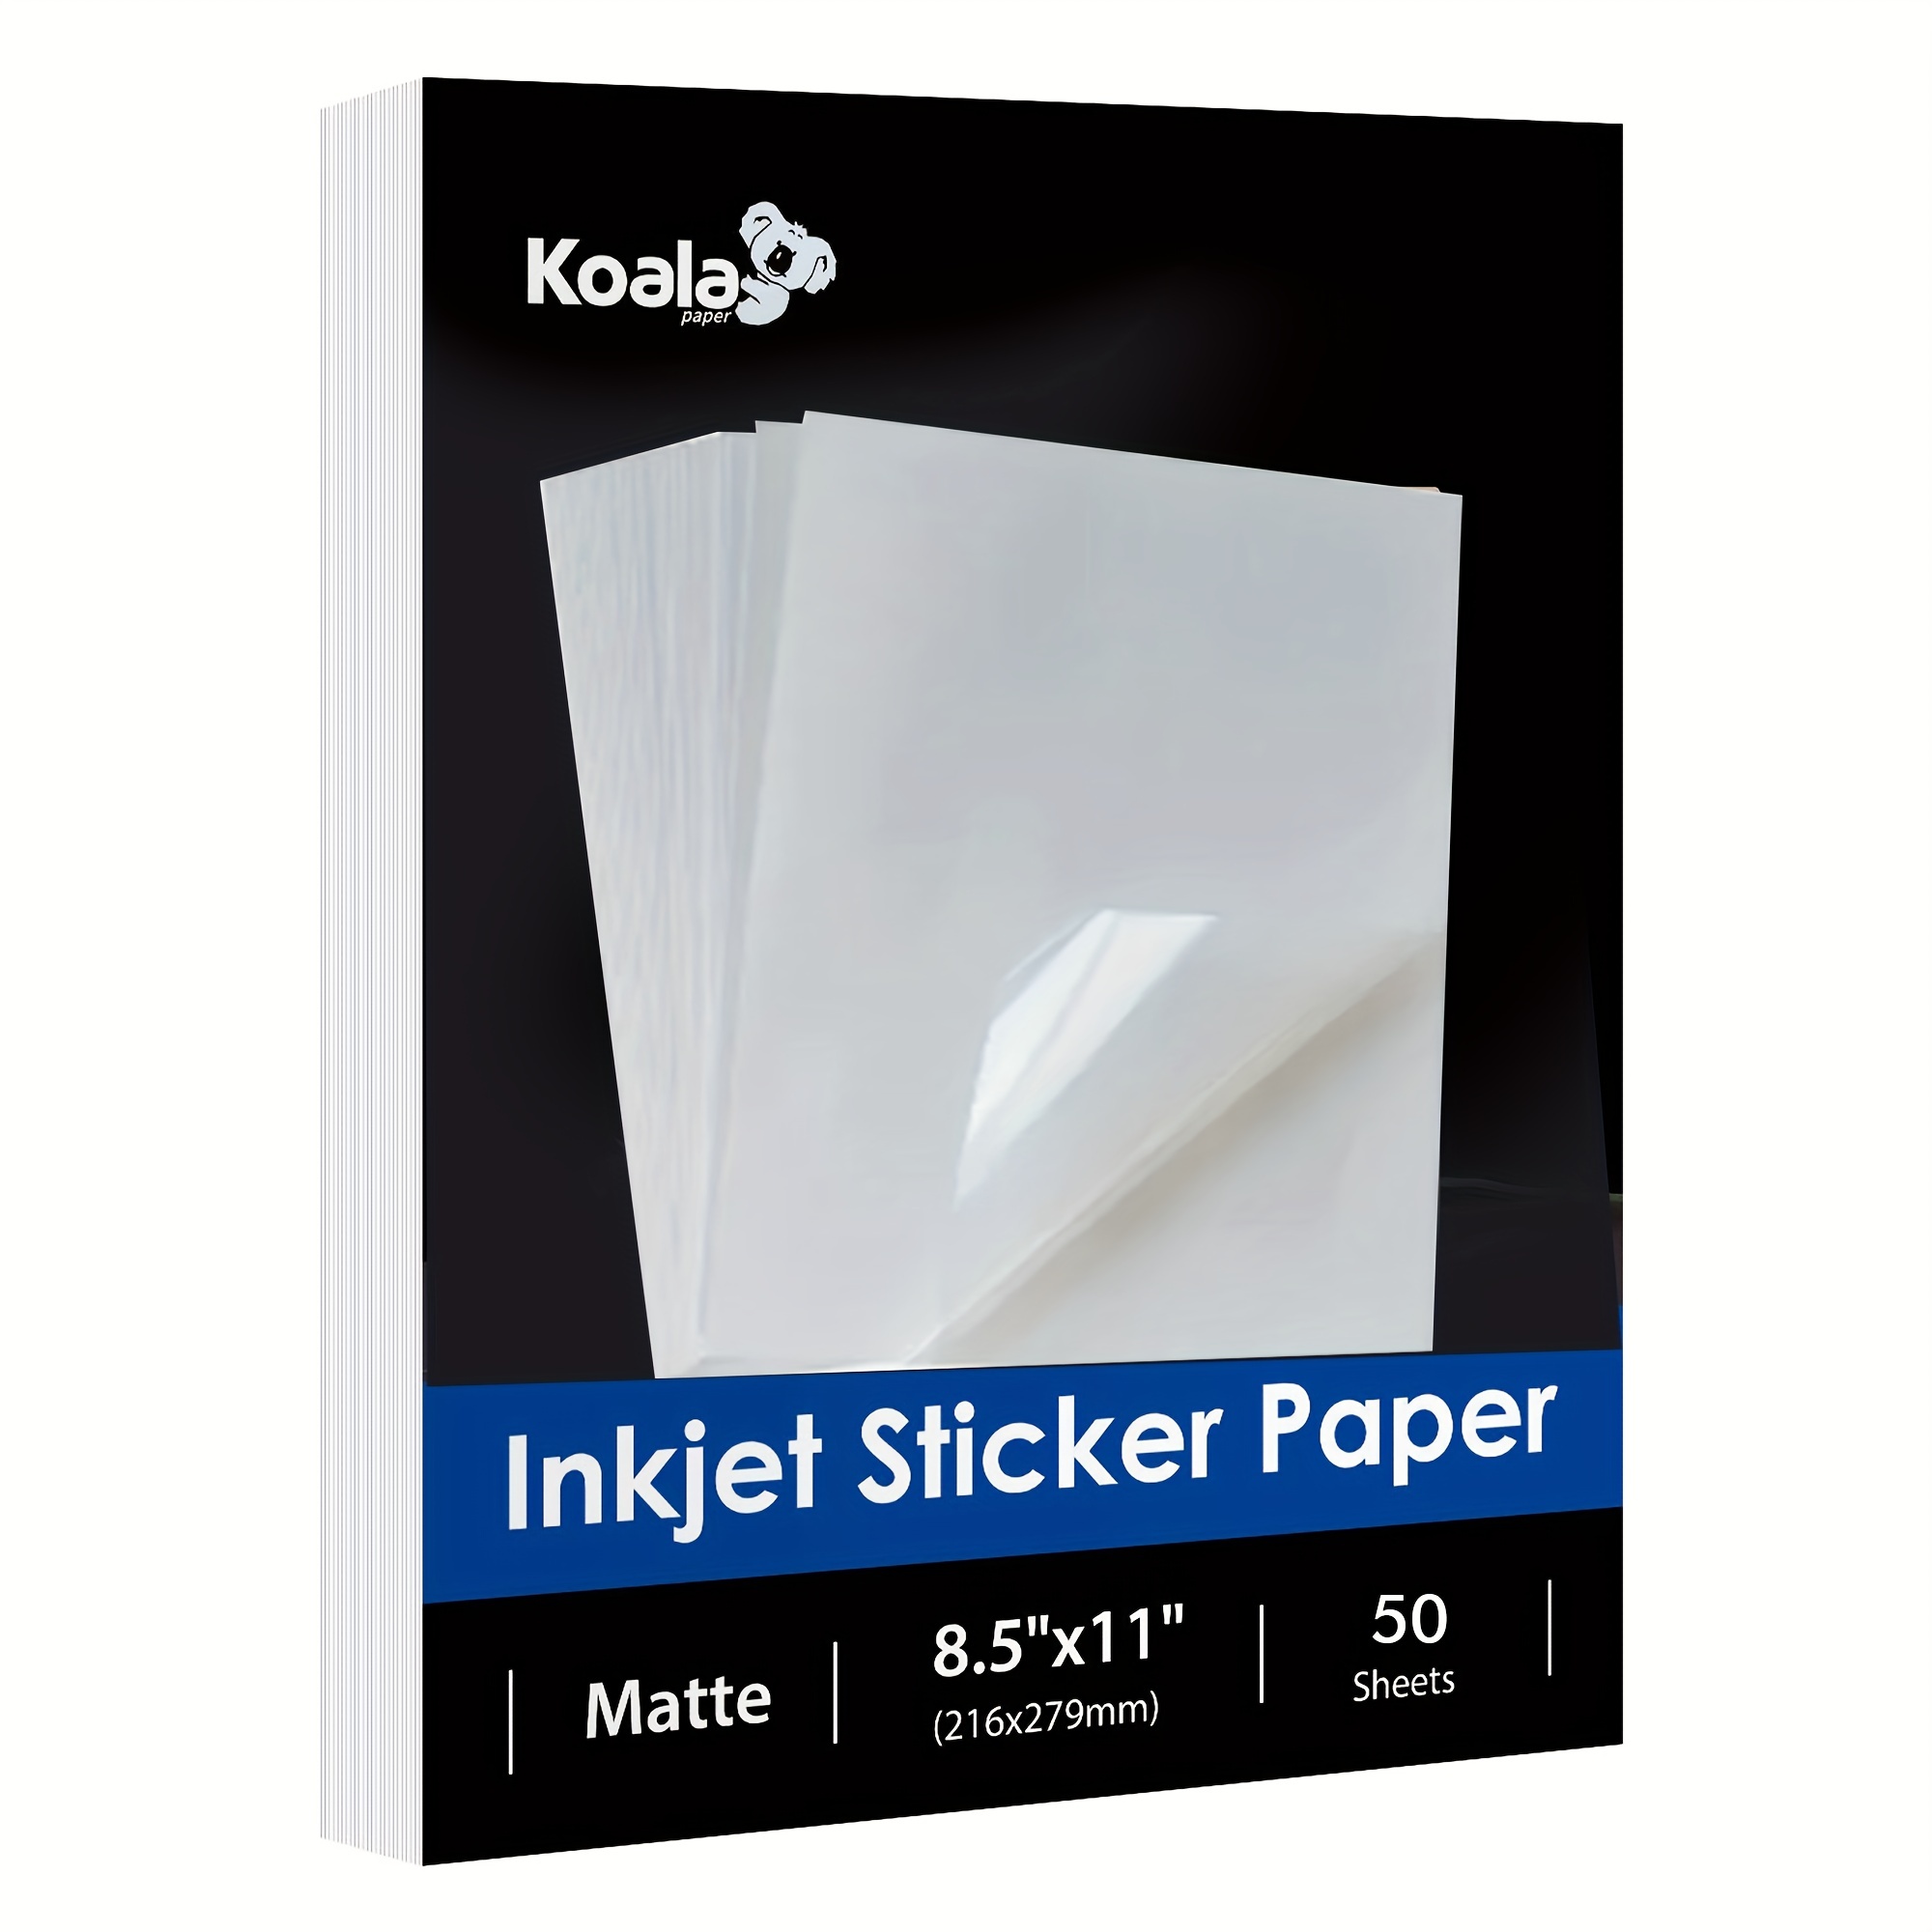 Koala Printable Sticker Paper 8.5x11 Semi-Gloss for Inkjet & Laser